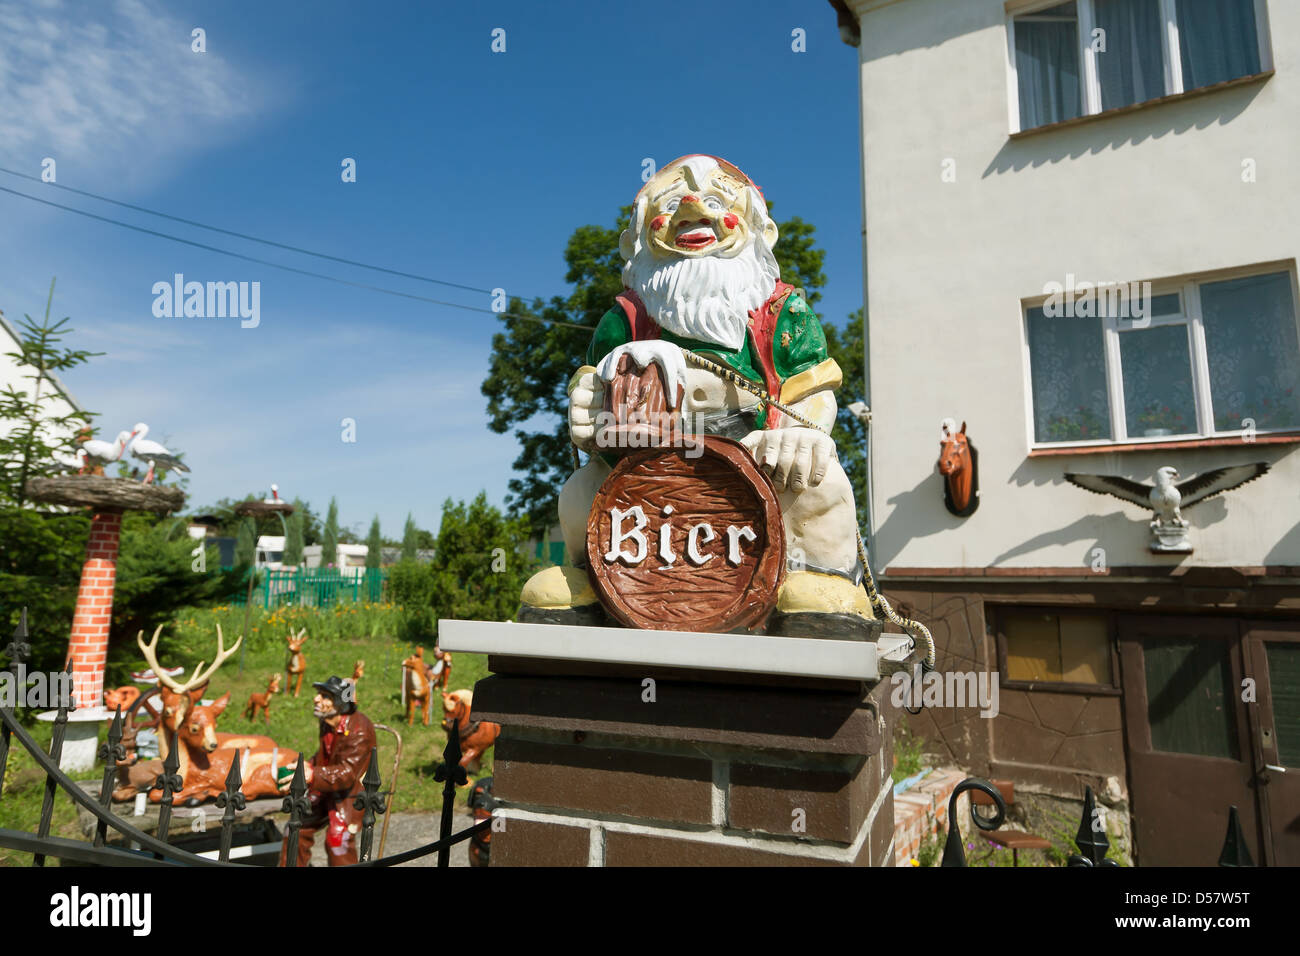 Wroclaw, Polen, Deutsch klingenden Gartenzwerg vor einem Haus  Stockfotografie - Alamy